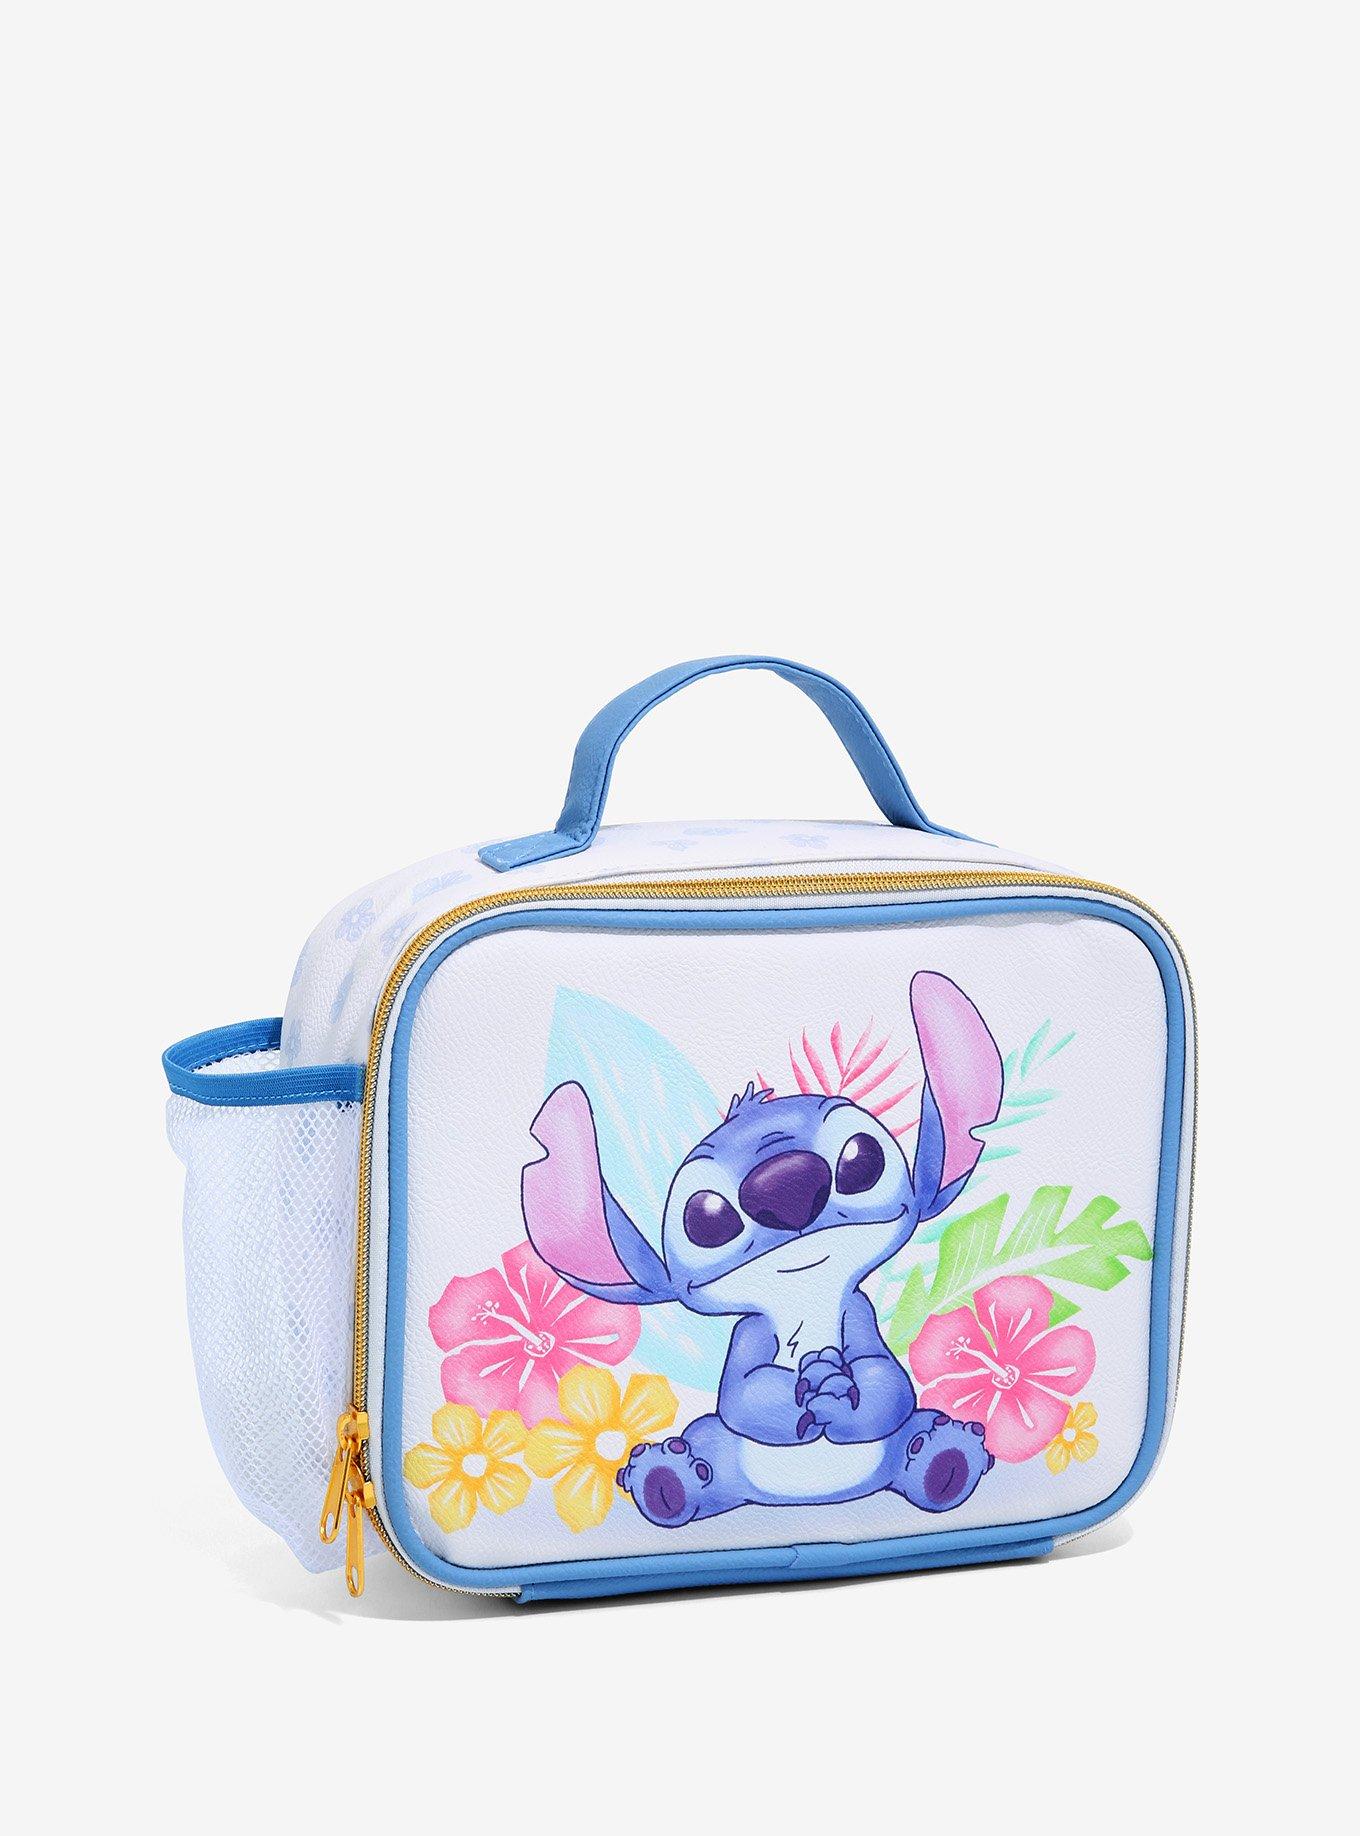 Disney Stitch Lunch Box - Blue 1 ct